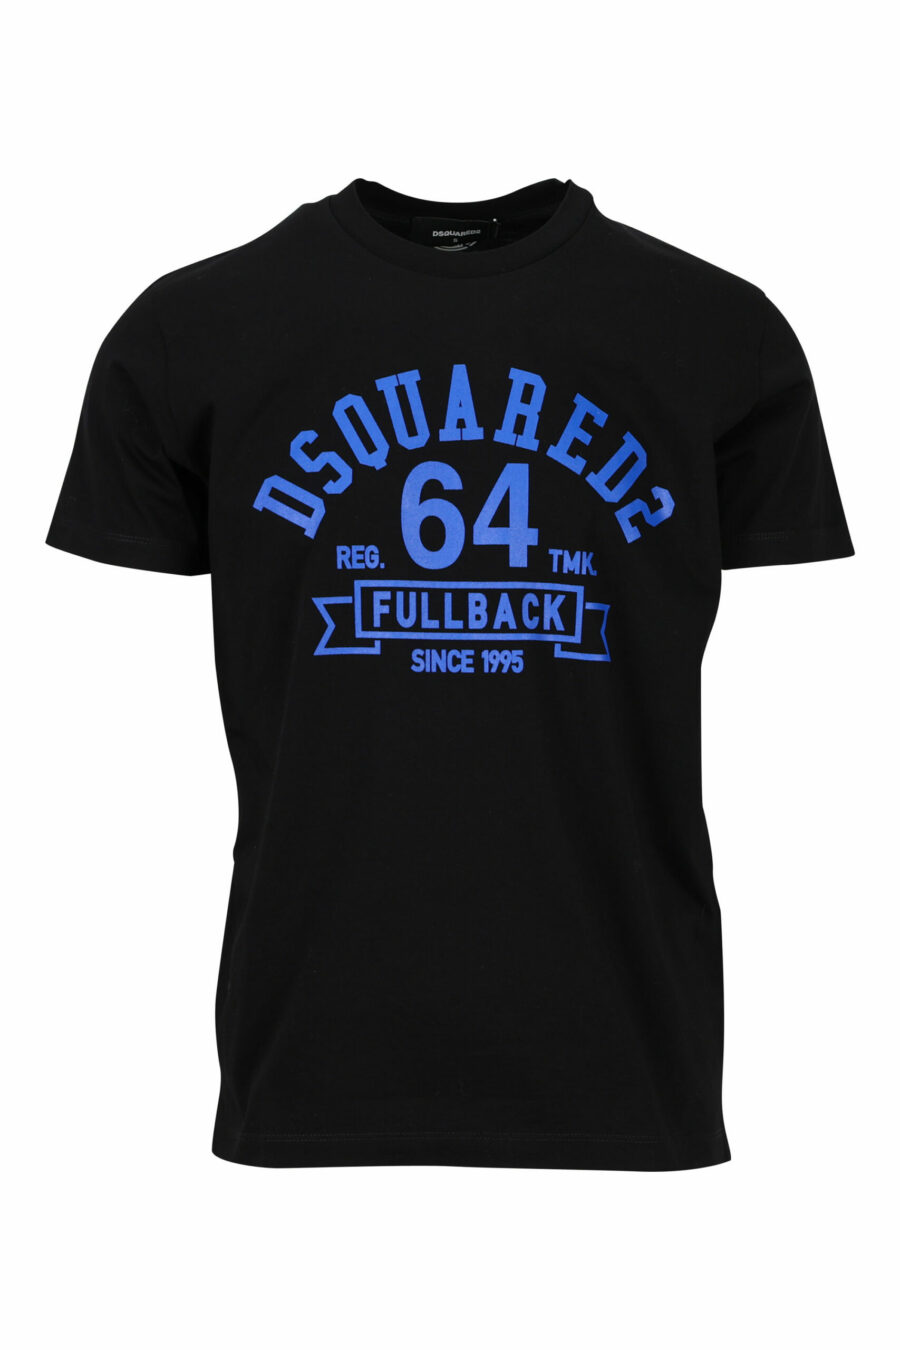 T-shirt noir avec maxilogue bleu "college" - 8054148086510